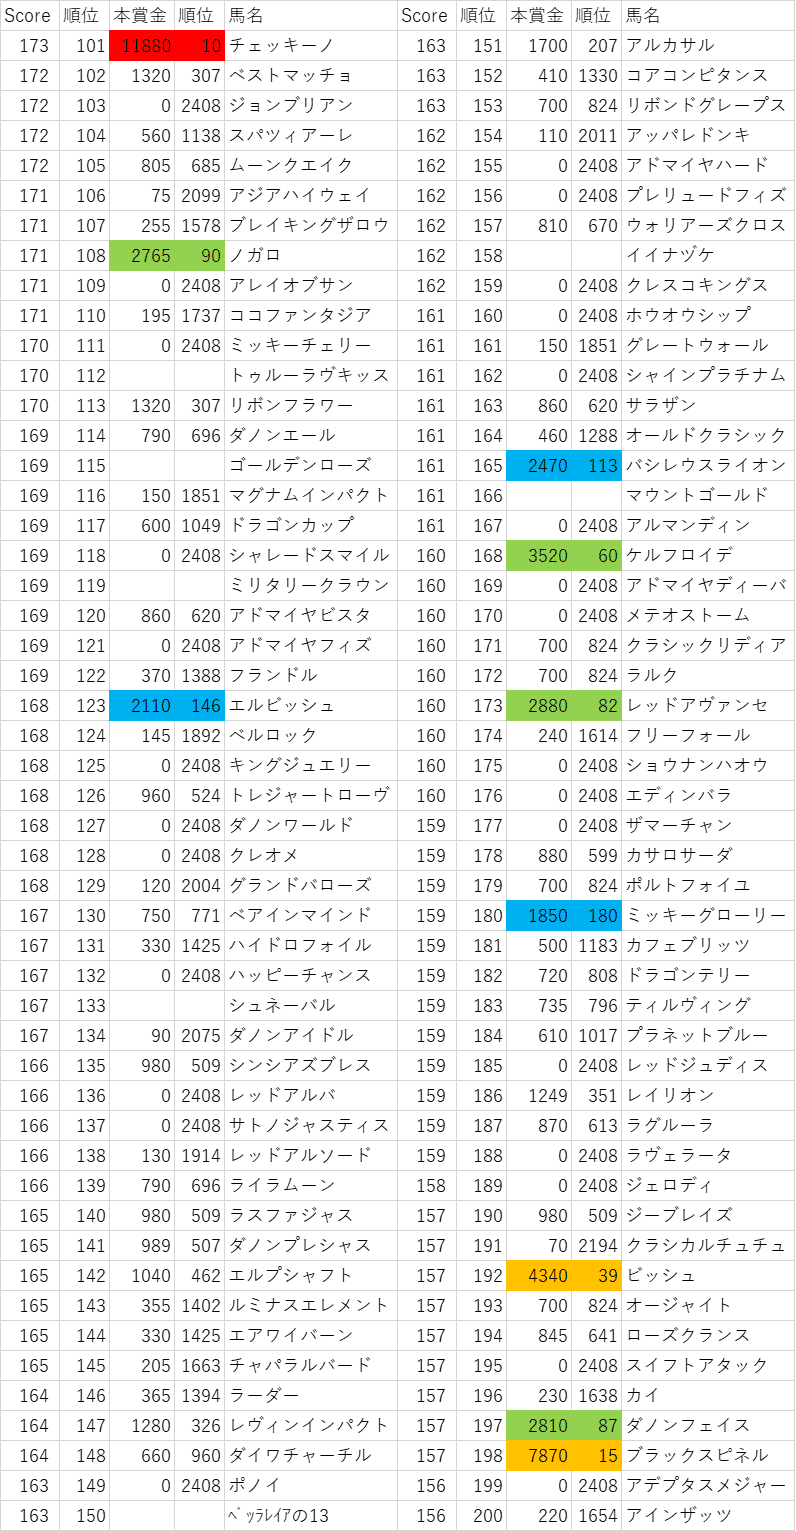 2013年産駒スコア101~200位